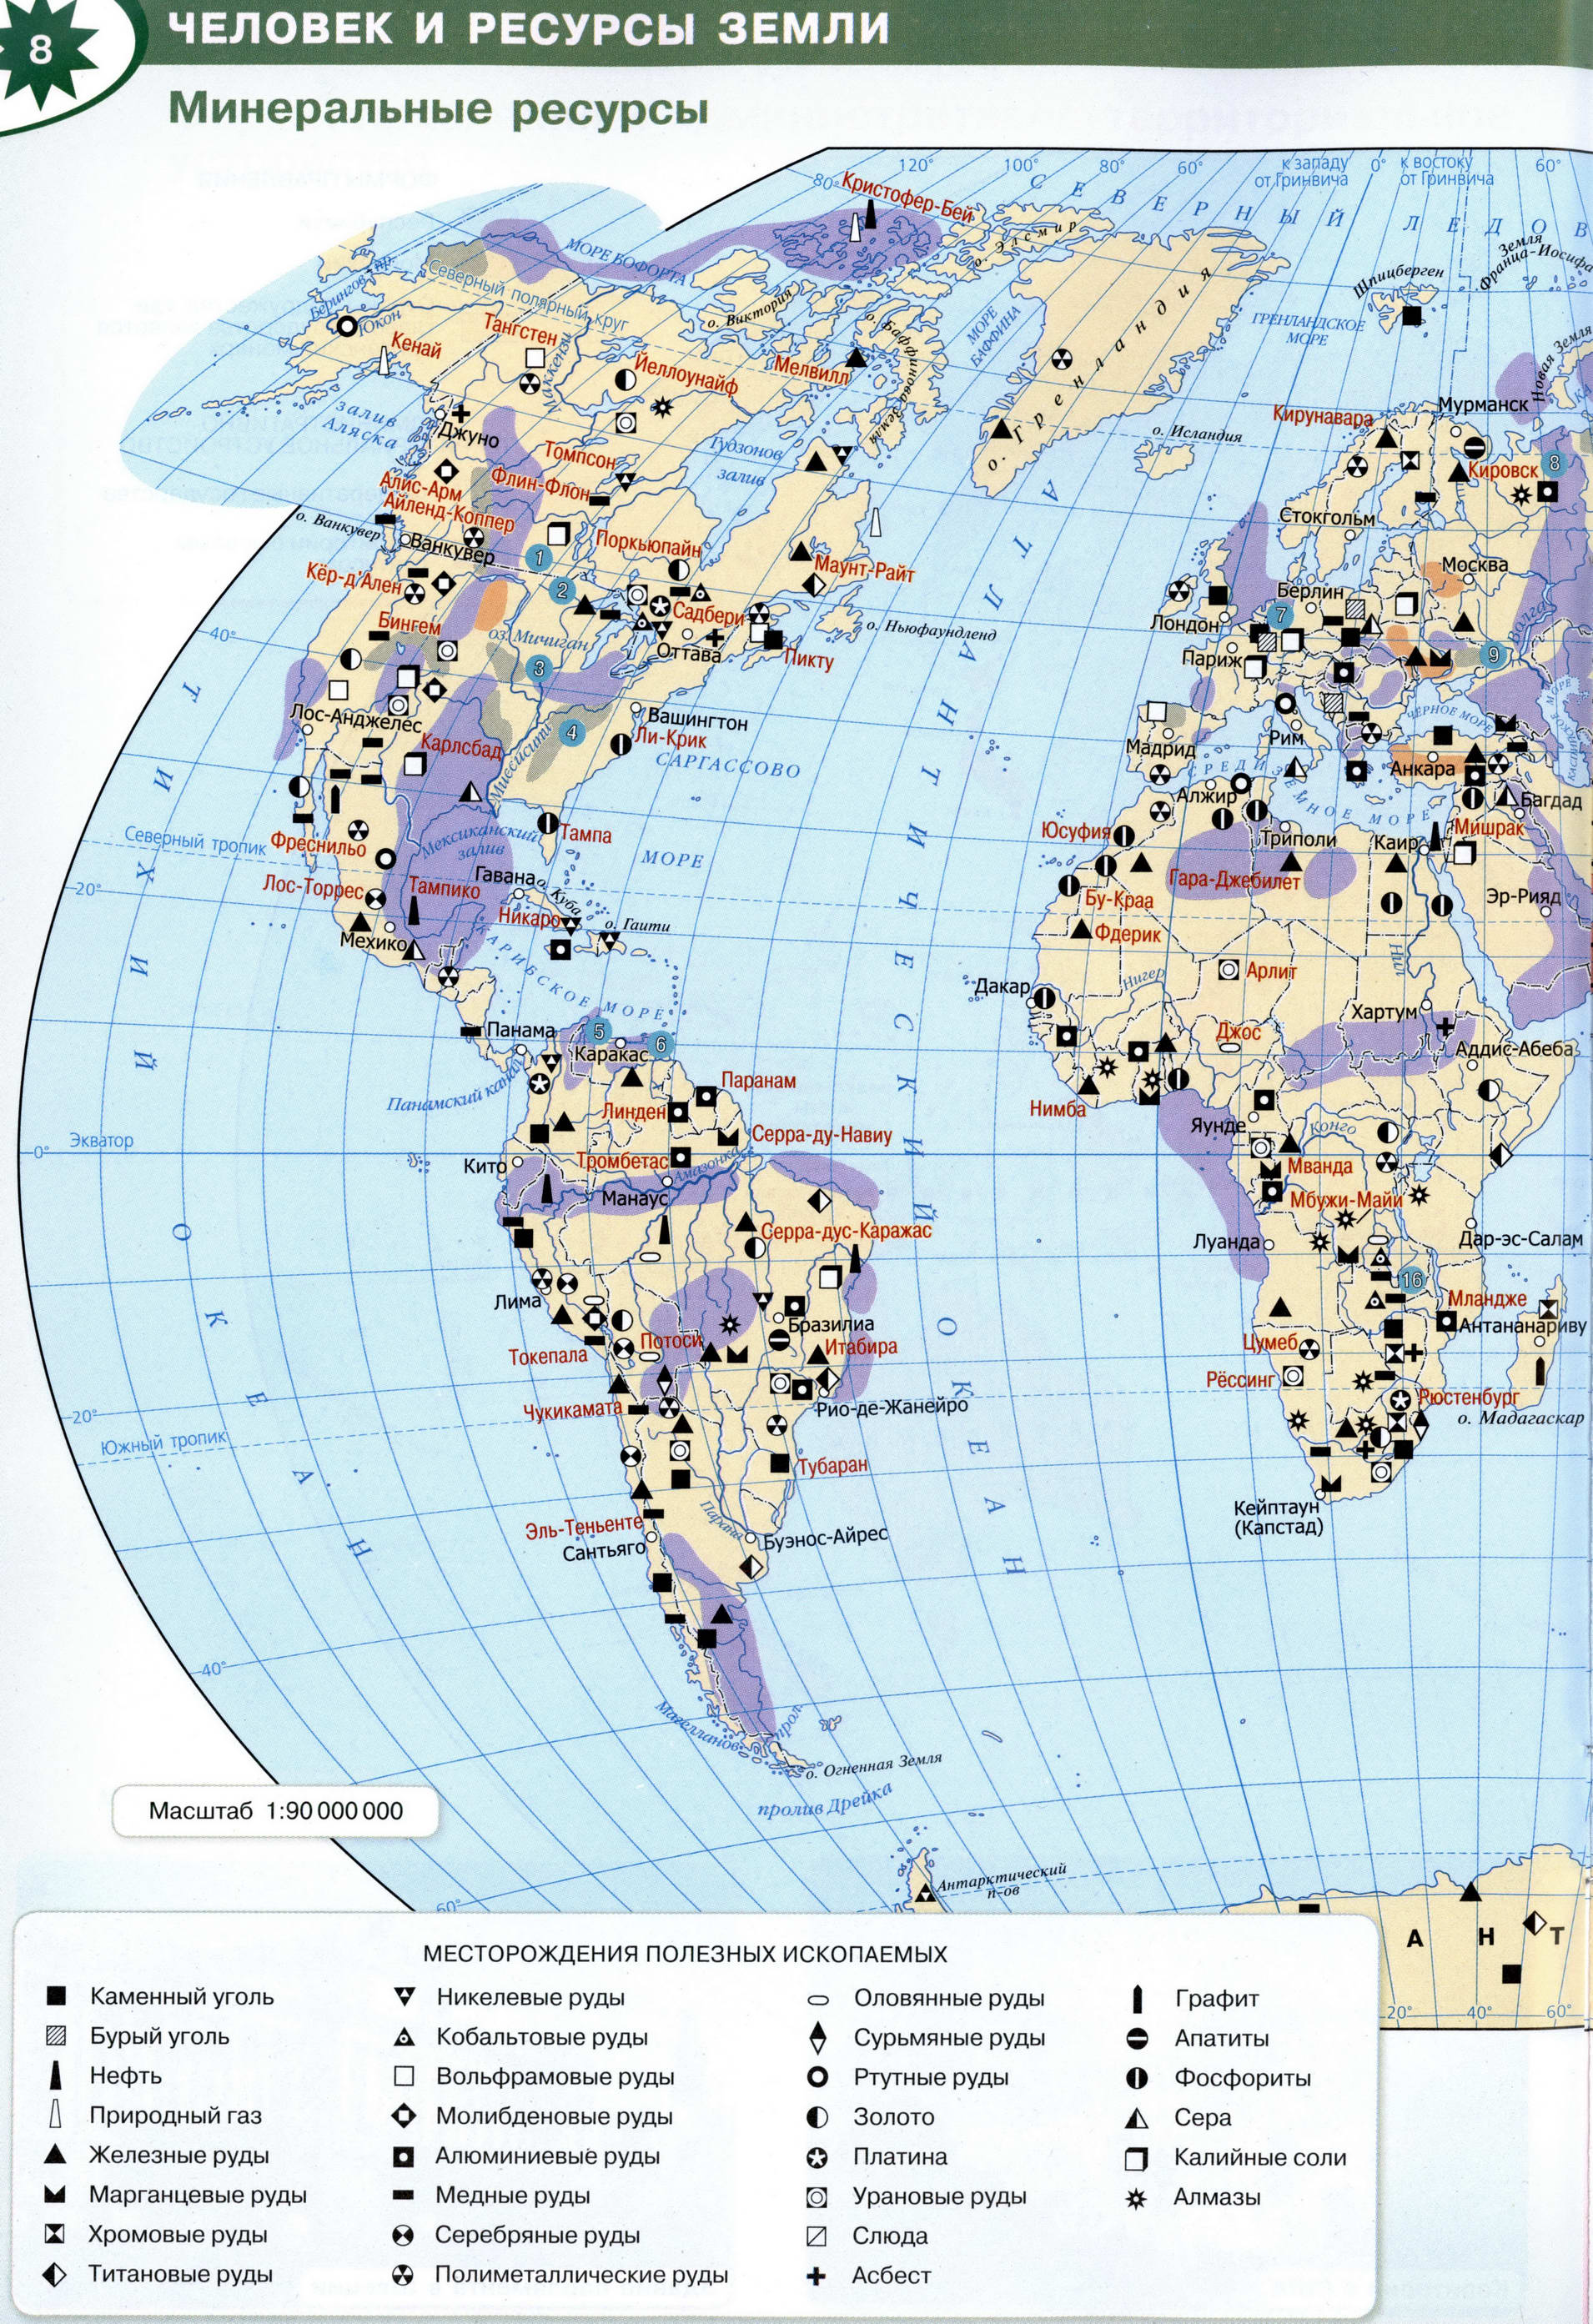 Минеральные ресурсы Земли - Атлас 10-11 класс география Полярная звезда